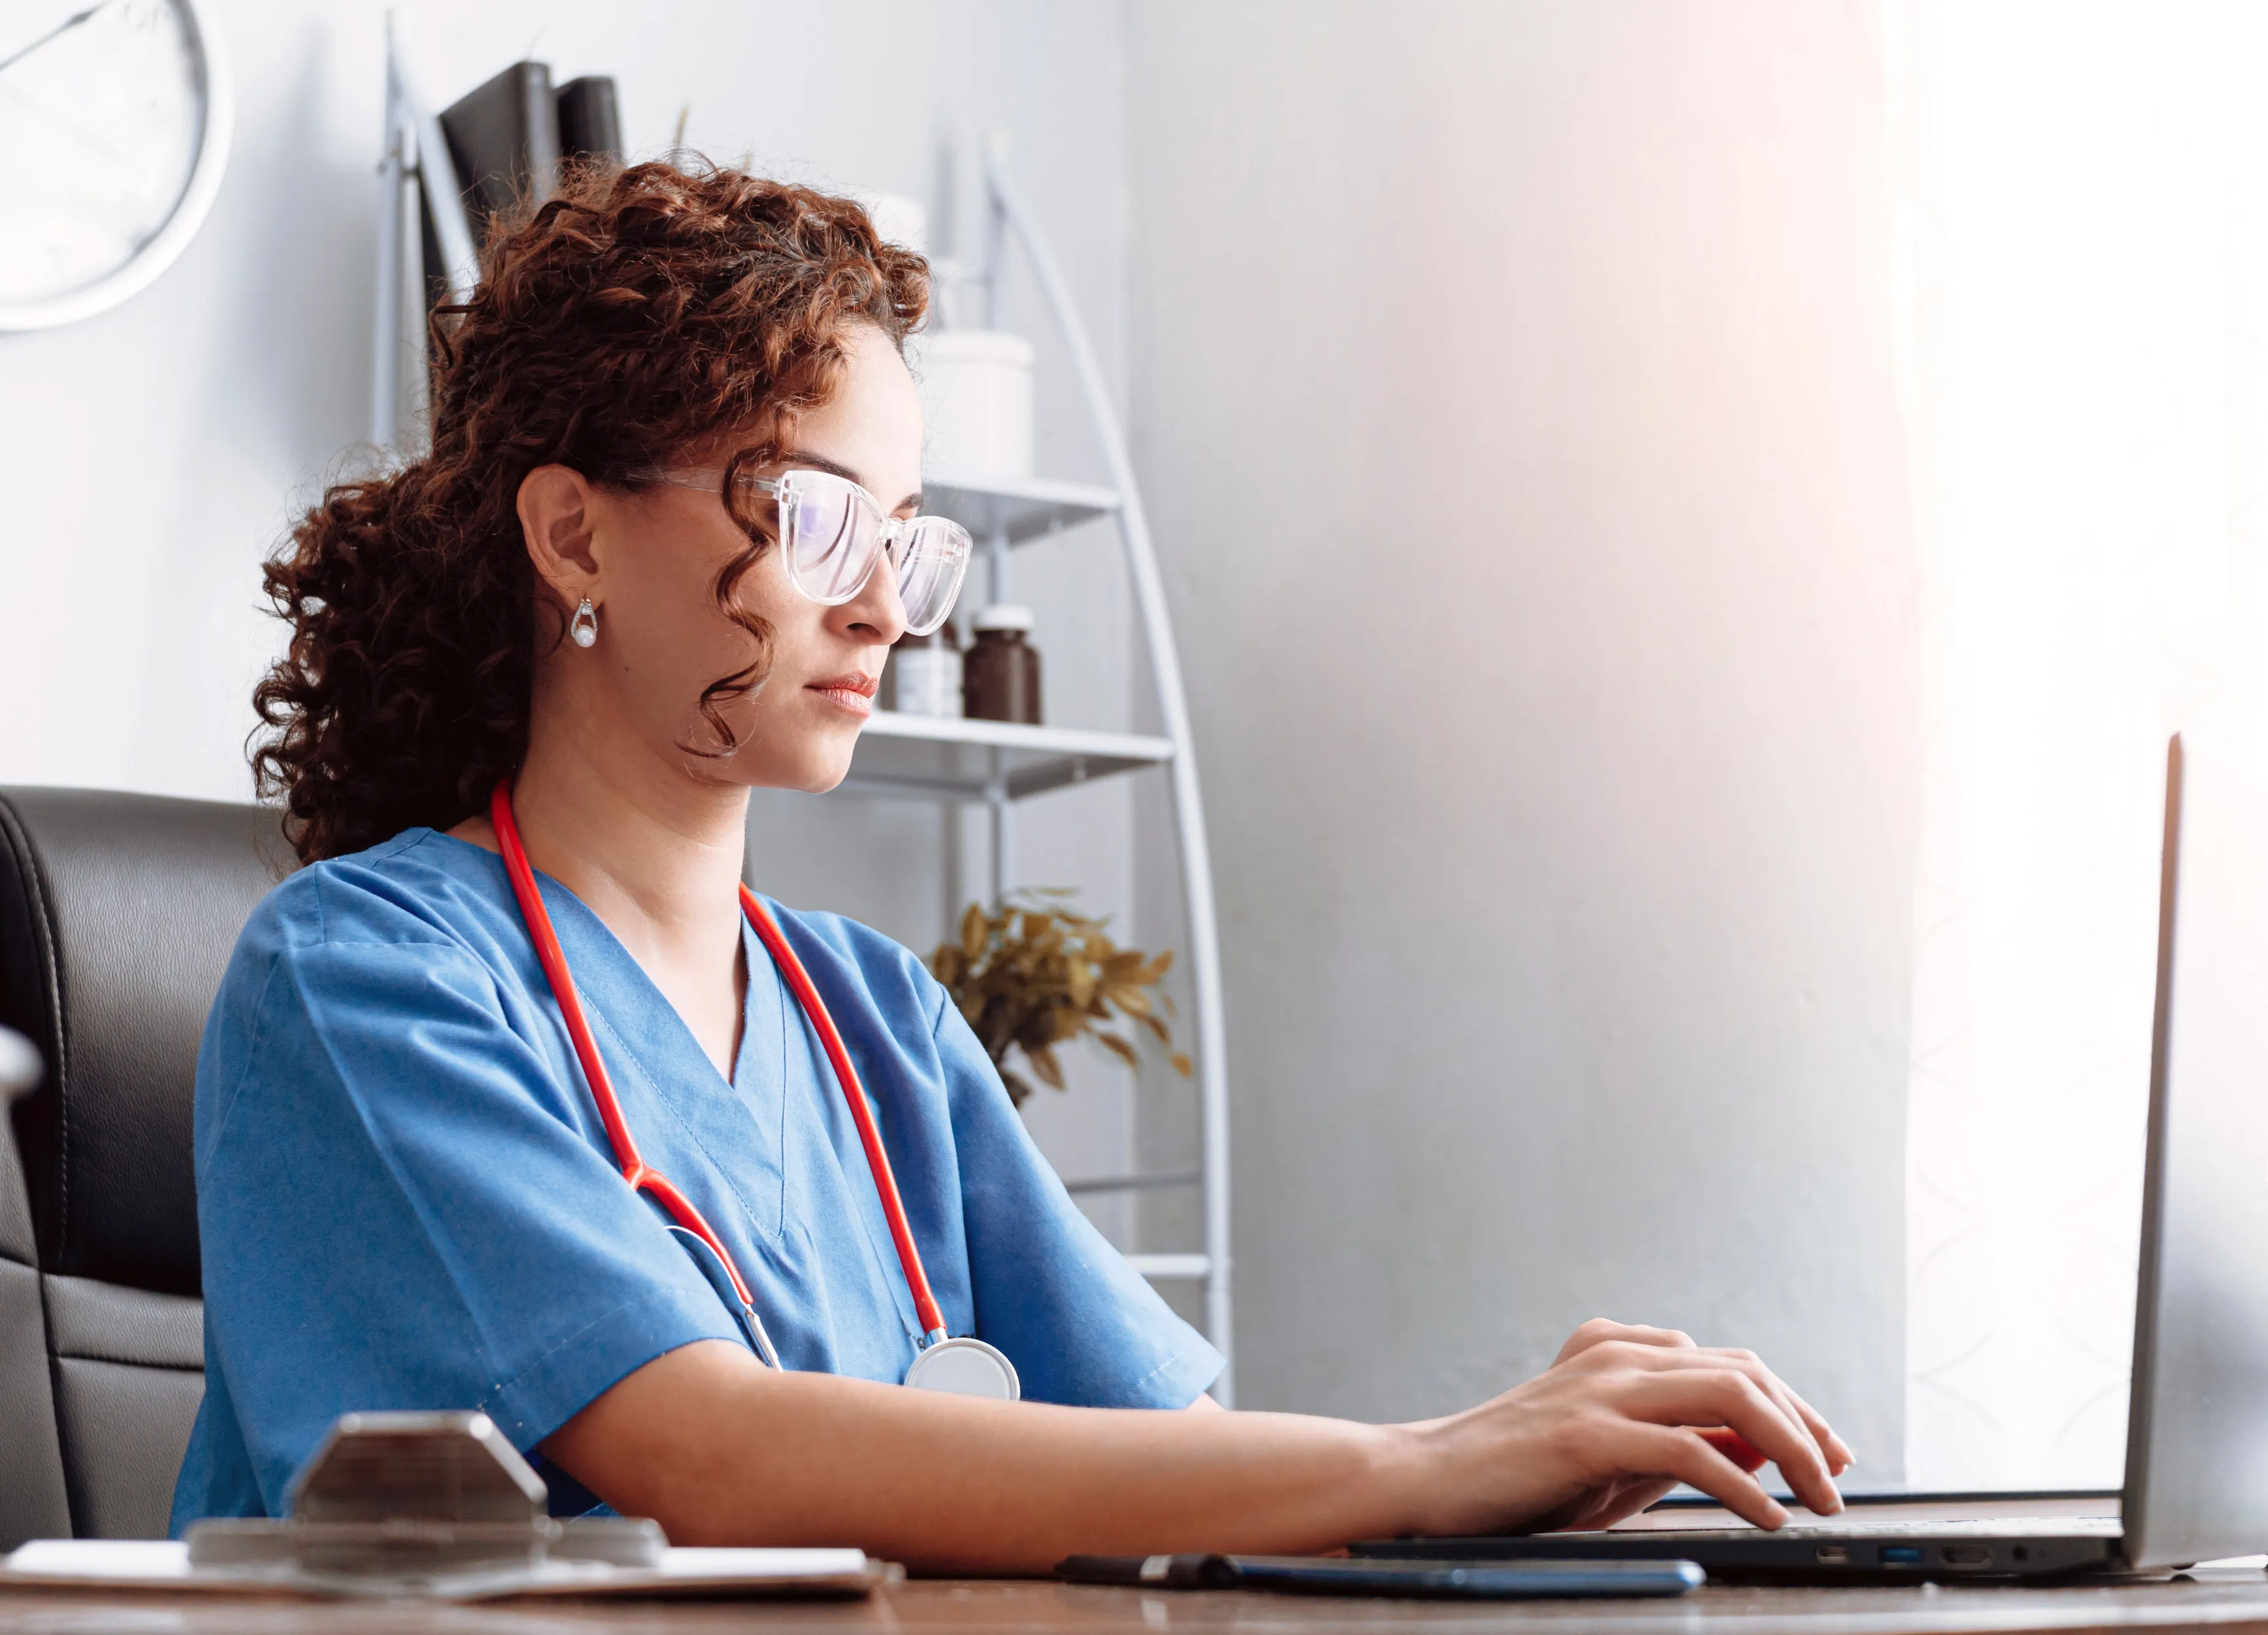 A nurse types on a laptop